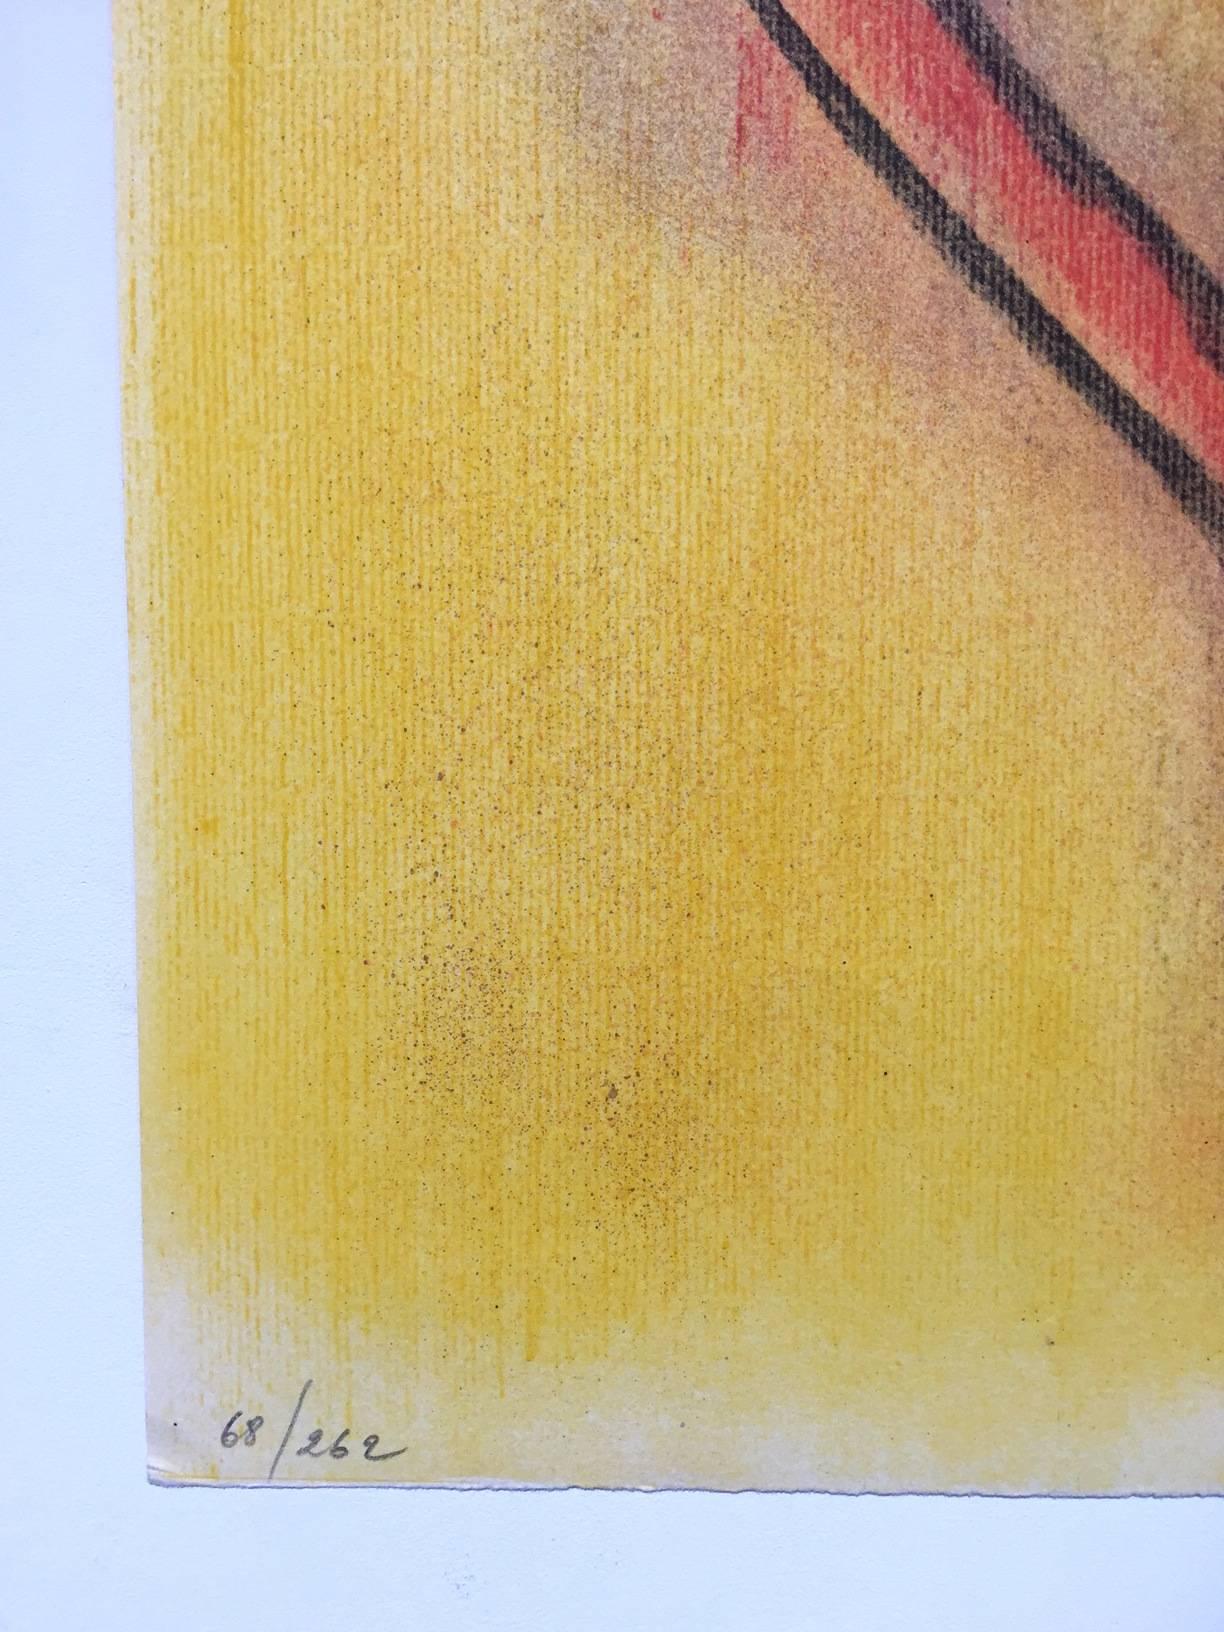 INFORMATIONS TECHNIQUES :

Wilfredo Lam
Innocence, de Pleni Luna
1974
Lithographie
25 1/2 x 19 3/4 in.
Edition de 262
Crayon signé et numéroté

Accompagné d'un COA par Gregg Shienbaum Fine Art.

État : Cette œuvre est dans un état impeccable. Les